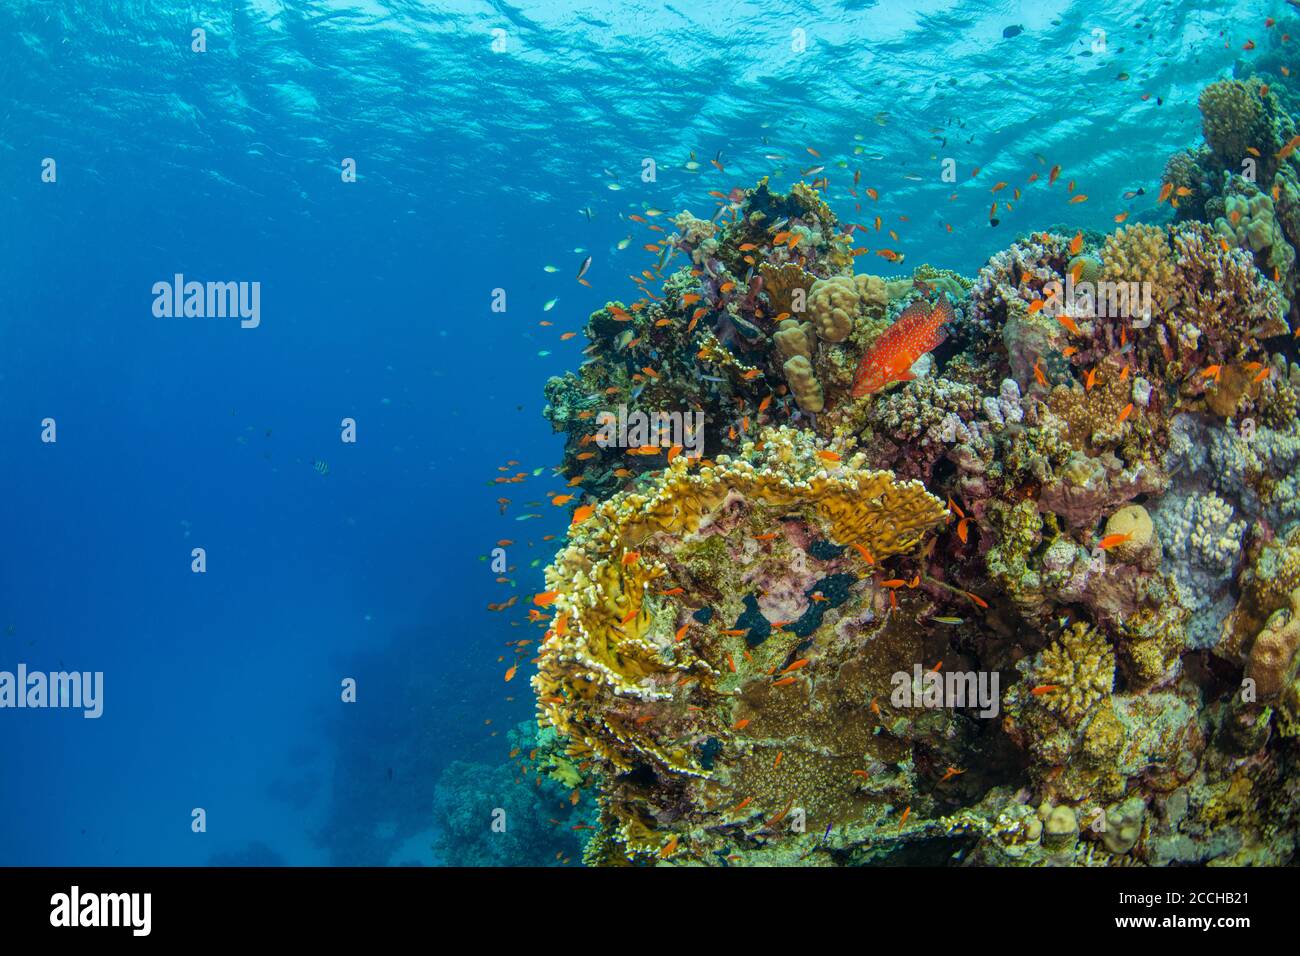 Bellissima barriera corallina con foca. Foto del paesaggio subacqueo con pesci e vita marina Foto Stock